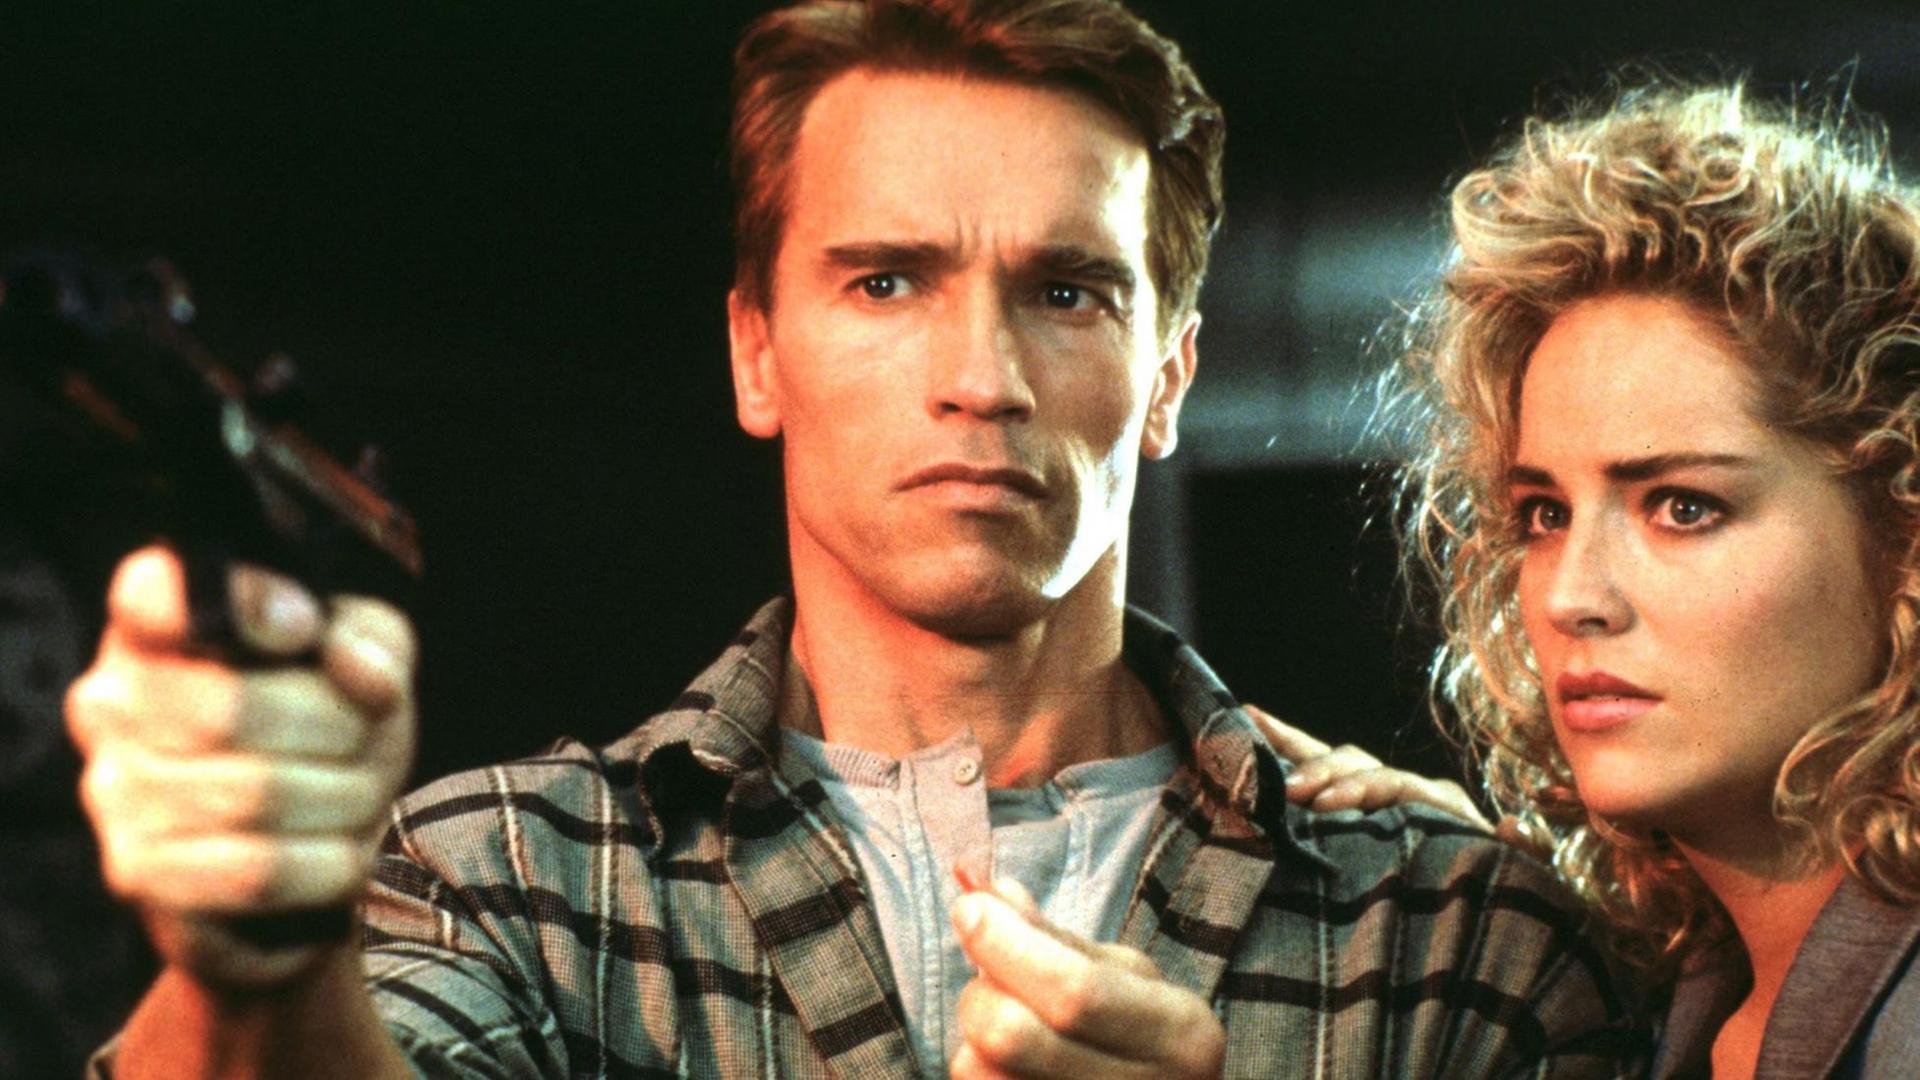 Eine Filmszene aus "Die totale Erinnerung" (Total Recall) von 1990, mit Arnold Schwarzenegger und Sharon Stone, unter der Regie von Paul Verhoeven.